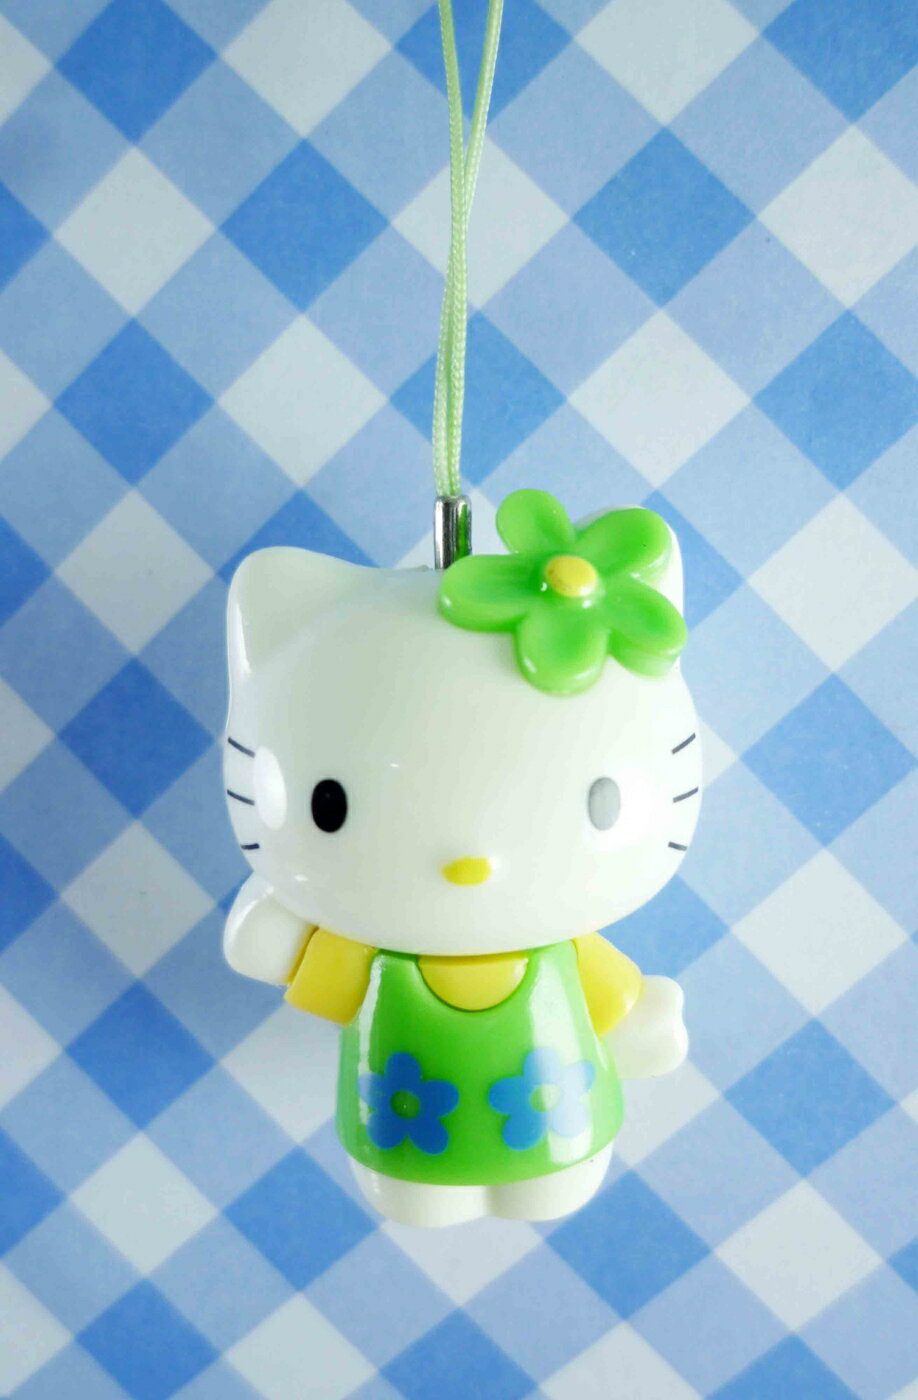 【震撼精品百貨】Hello Kitty 凱蒂貓 KITTY手機吊飾-KITTY站姿造型-綠色 震撼日式精品百貨